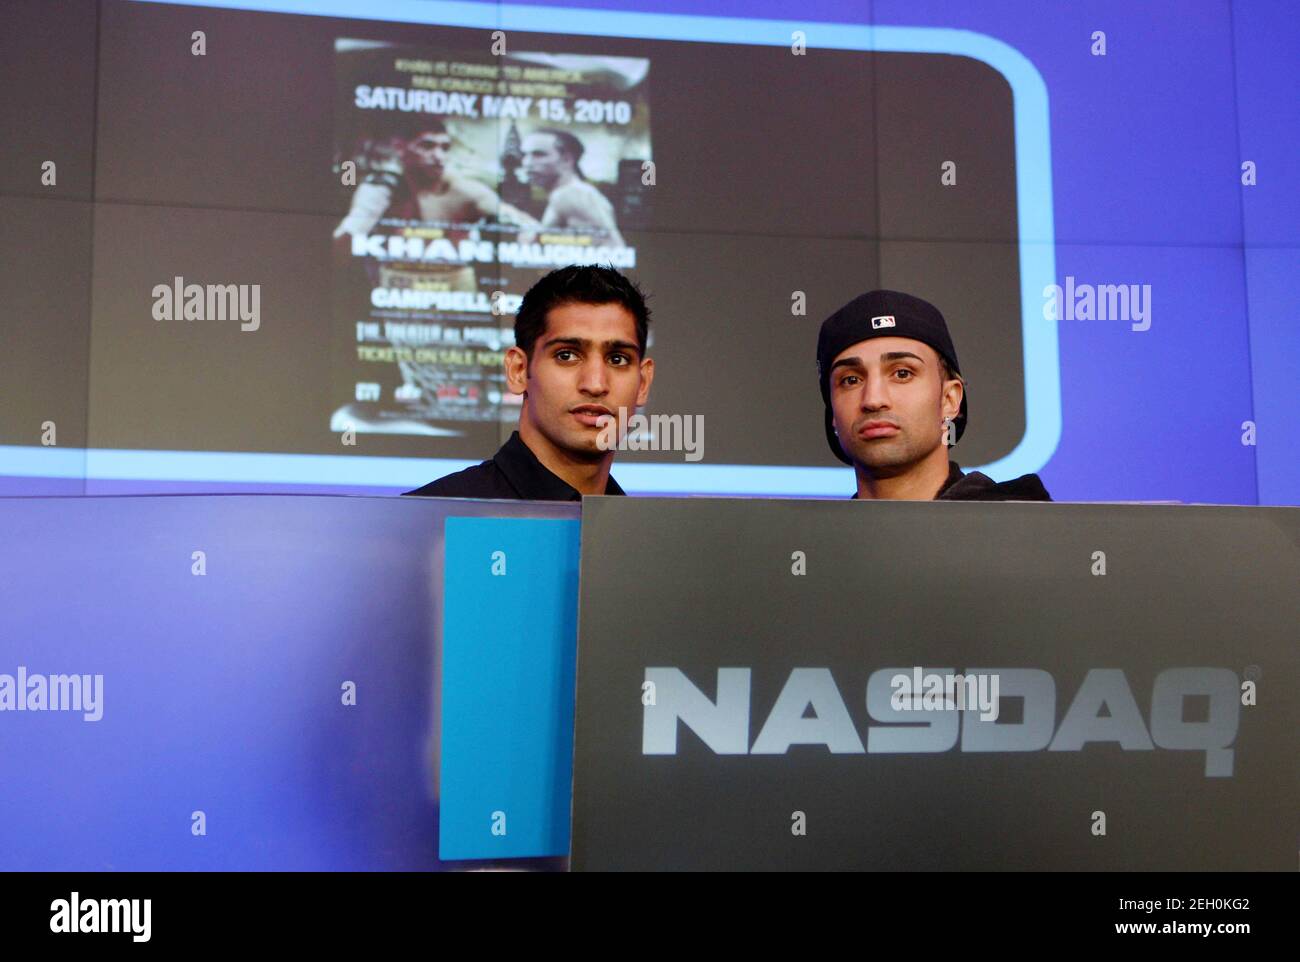 Boxen - Amir Khan & Paulie Malignaggi läuten die Eröffnungsglocke an der  Nasdaq Börse - New York City, Vereinigte Staaten von Amerika - 12/5/10 Amir  Khan (L) und Paulie Malignaggi läuten die